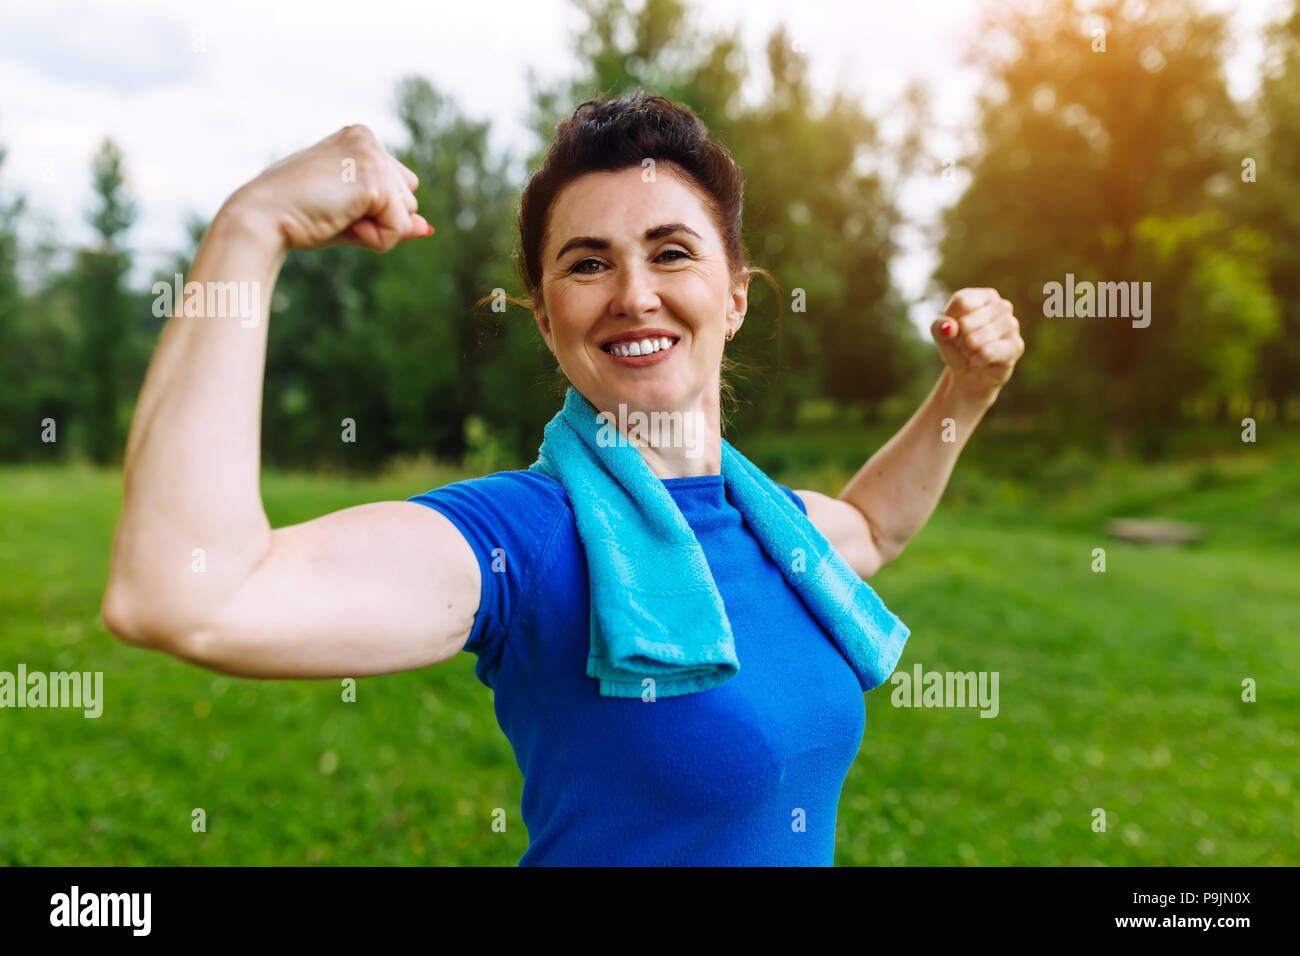 Lächelnd Senior Frau flexing Muskeln Outdoor im Park. Ältere Frauen zeigen Bizeps. Gesunden Lebensstil Konzept. Copyspace. Stockfoto